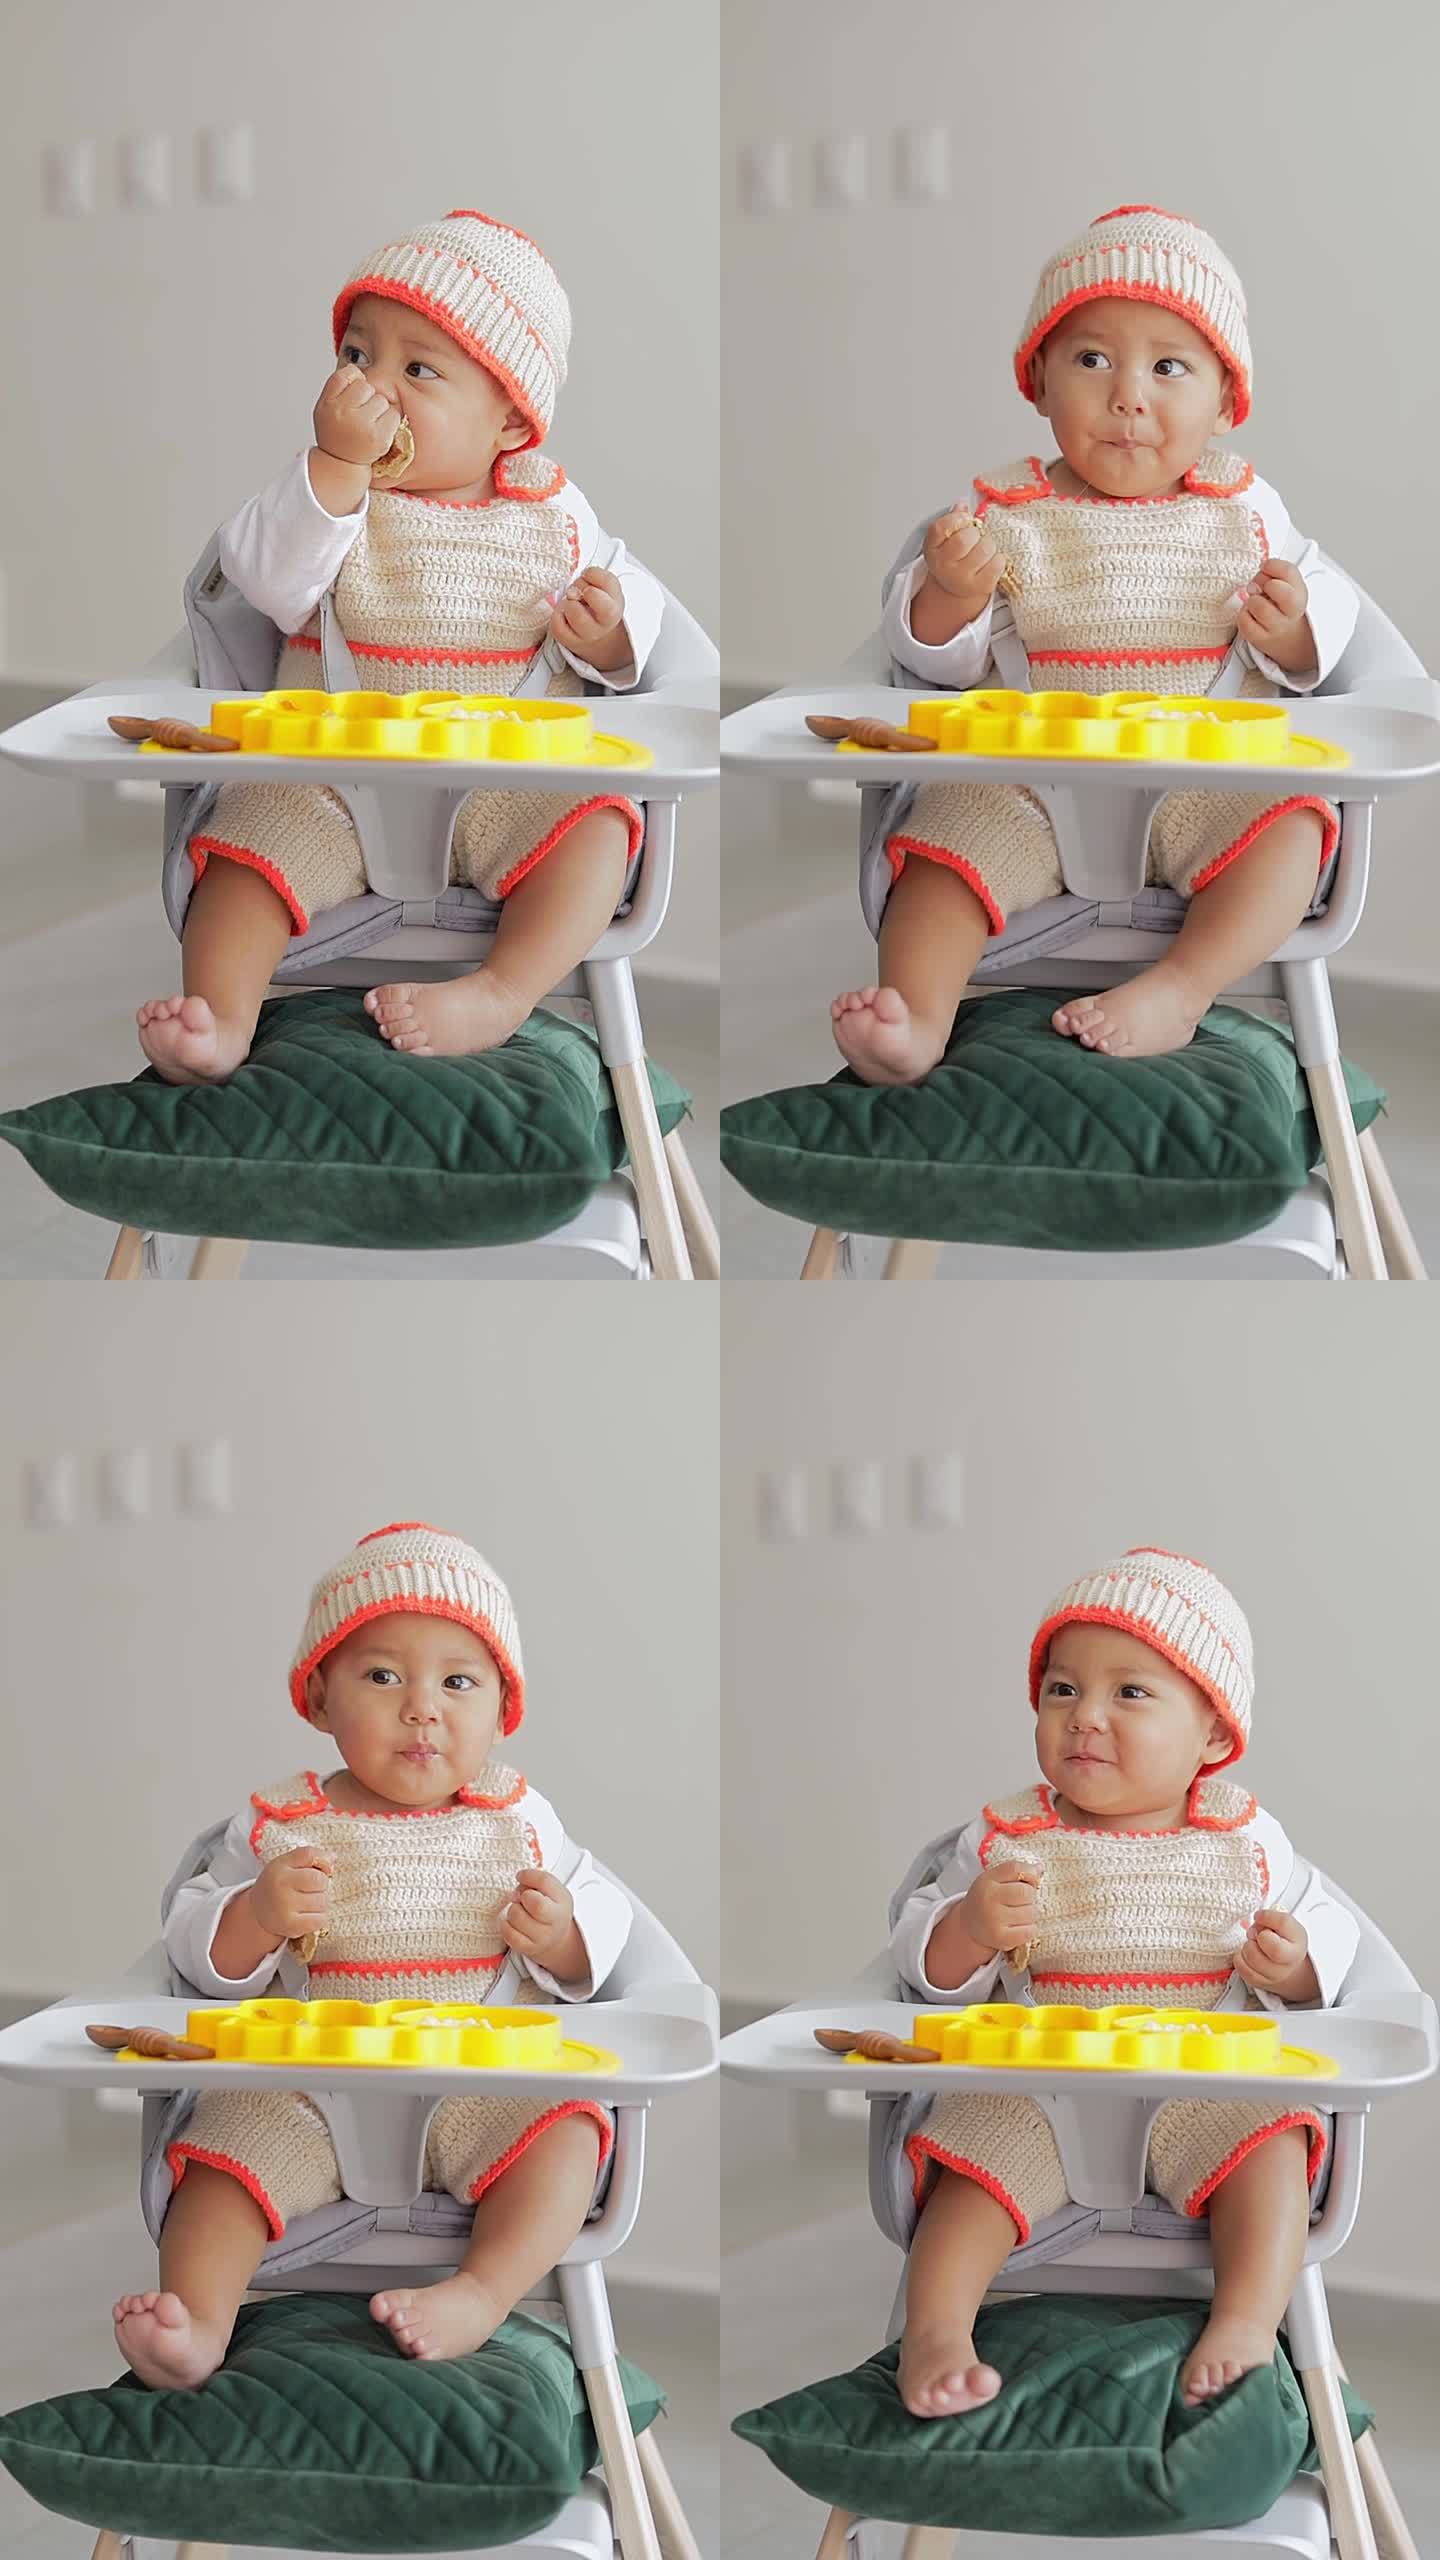 宝宝坐在椅子上用手吃煎饼的补充喂养。婴儿主导的断奶概念